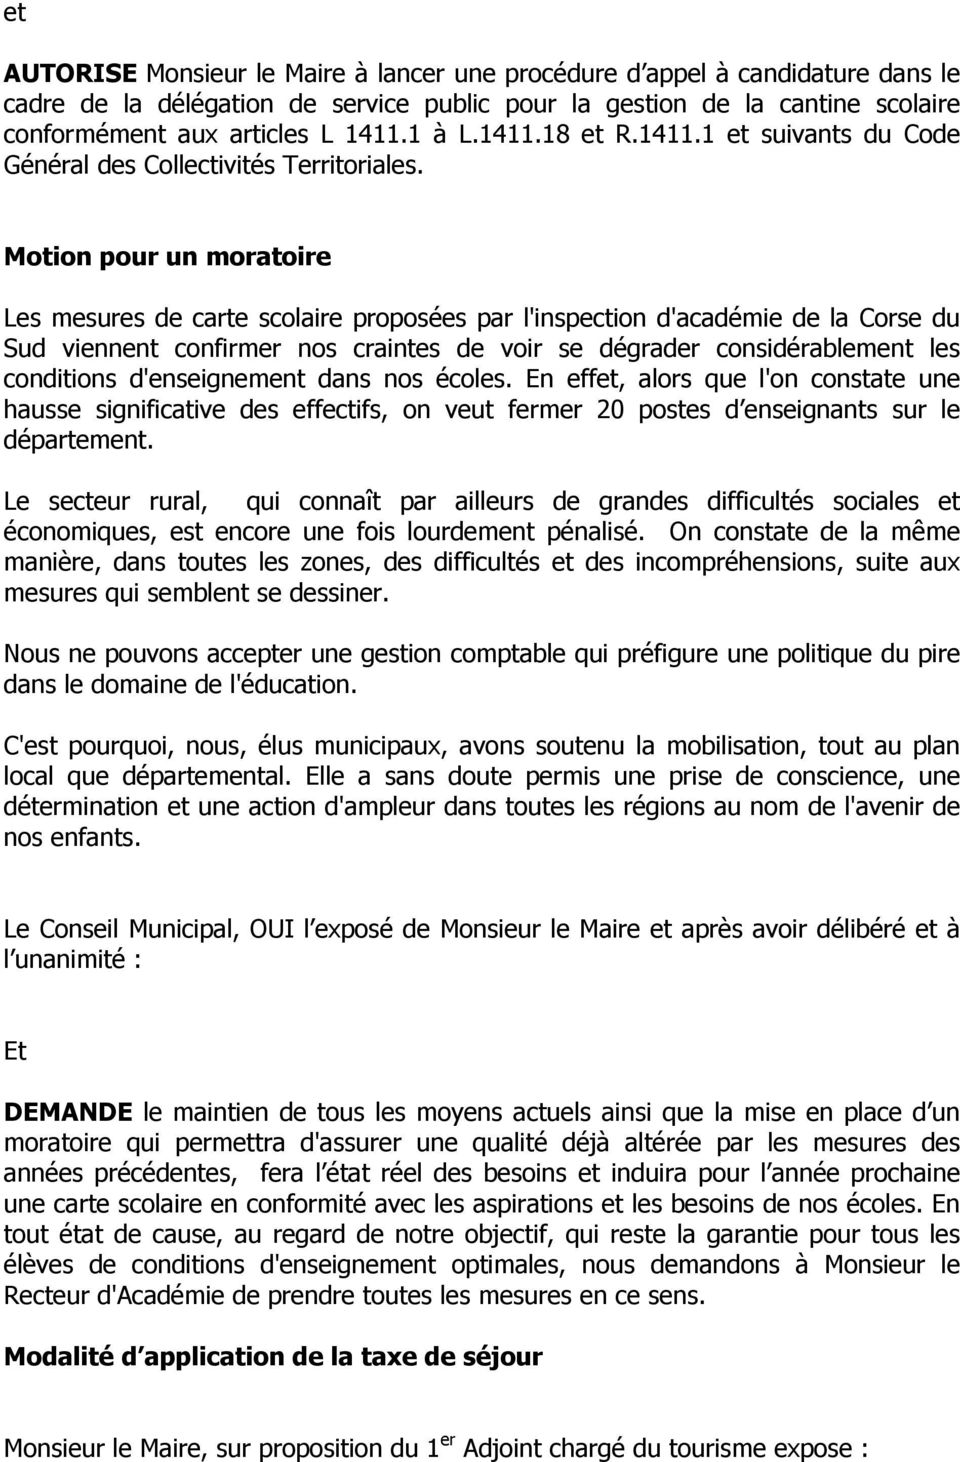 Motion pour un moratoire Les mesures de carte scolaire proposées par l'inspection d'académie de la Corse du Sud viennent confirmer nos craintes de voir se dégrader considérablement les conditions